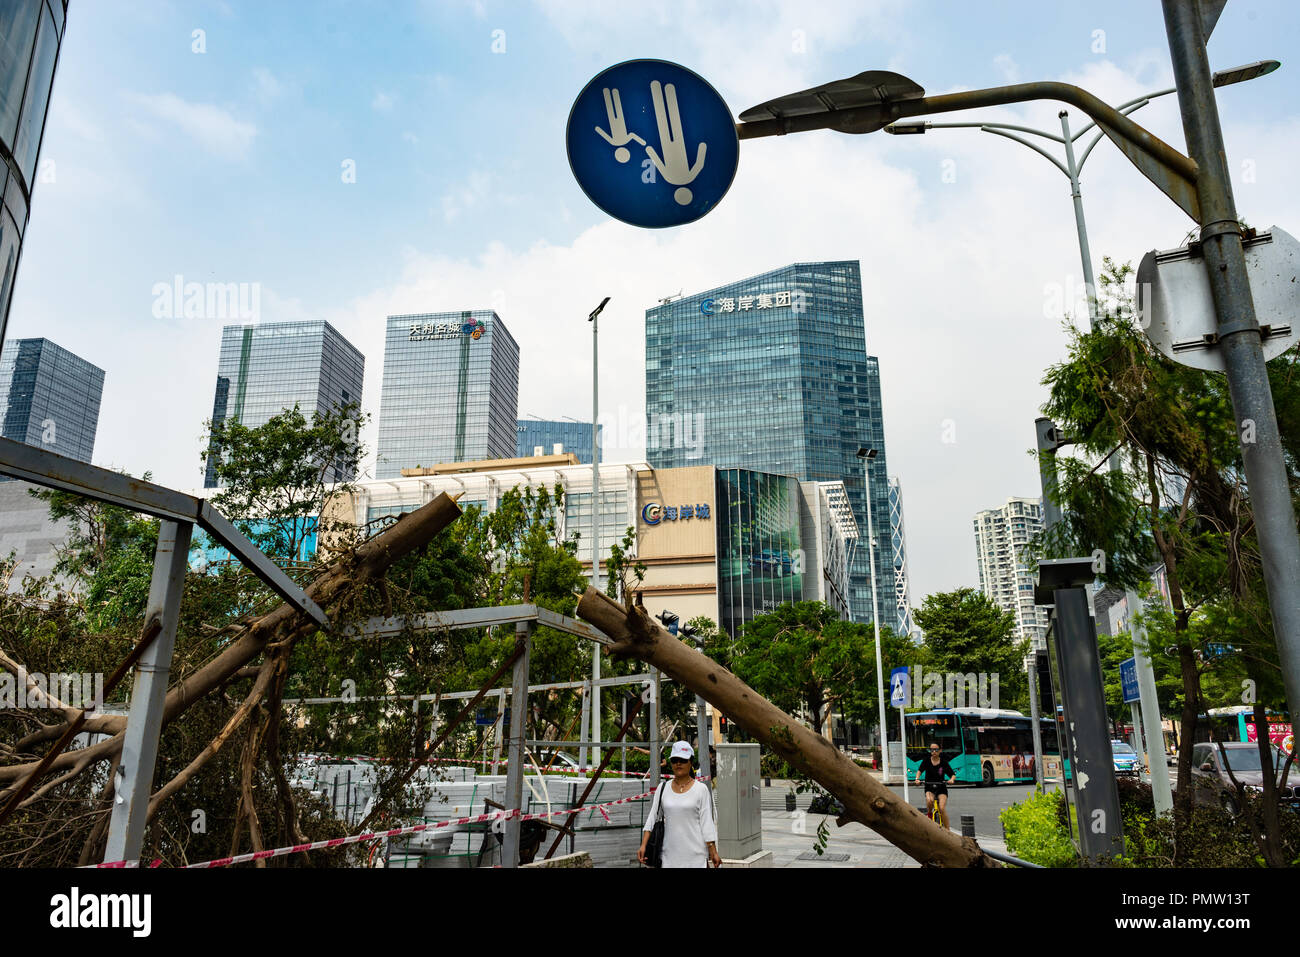 Capovolto danneggiato segno, Typhoon Mangkhut hits Shenzhen, nella provincia di Guangdong in Cina meridionale. Foto Stock